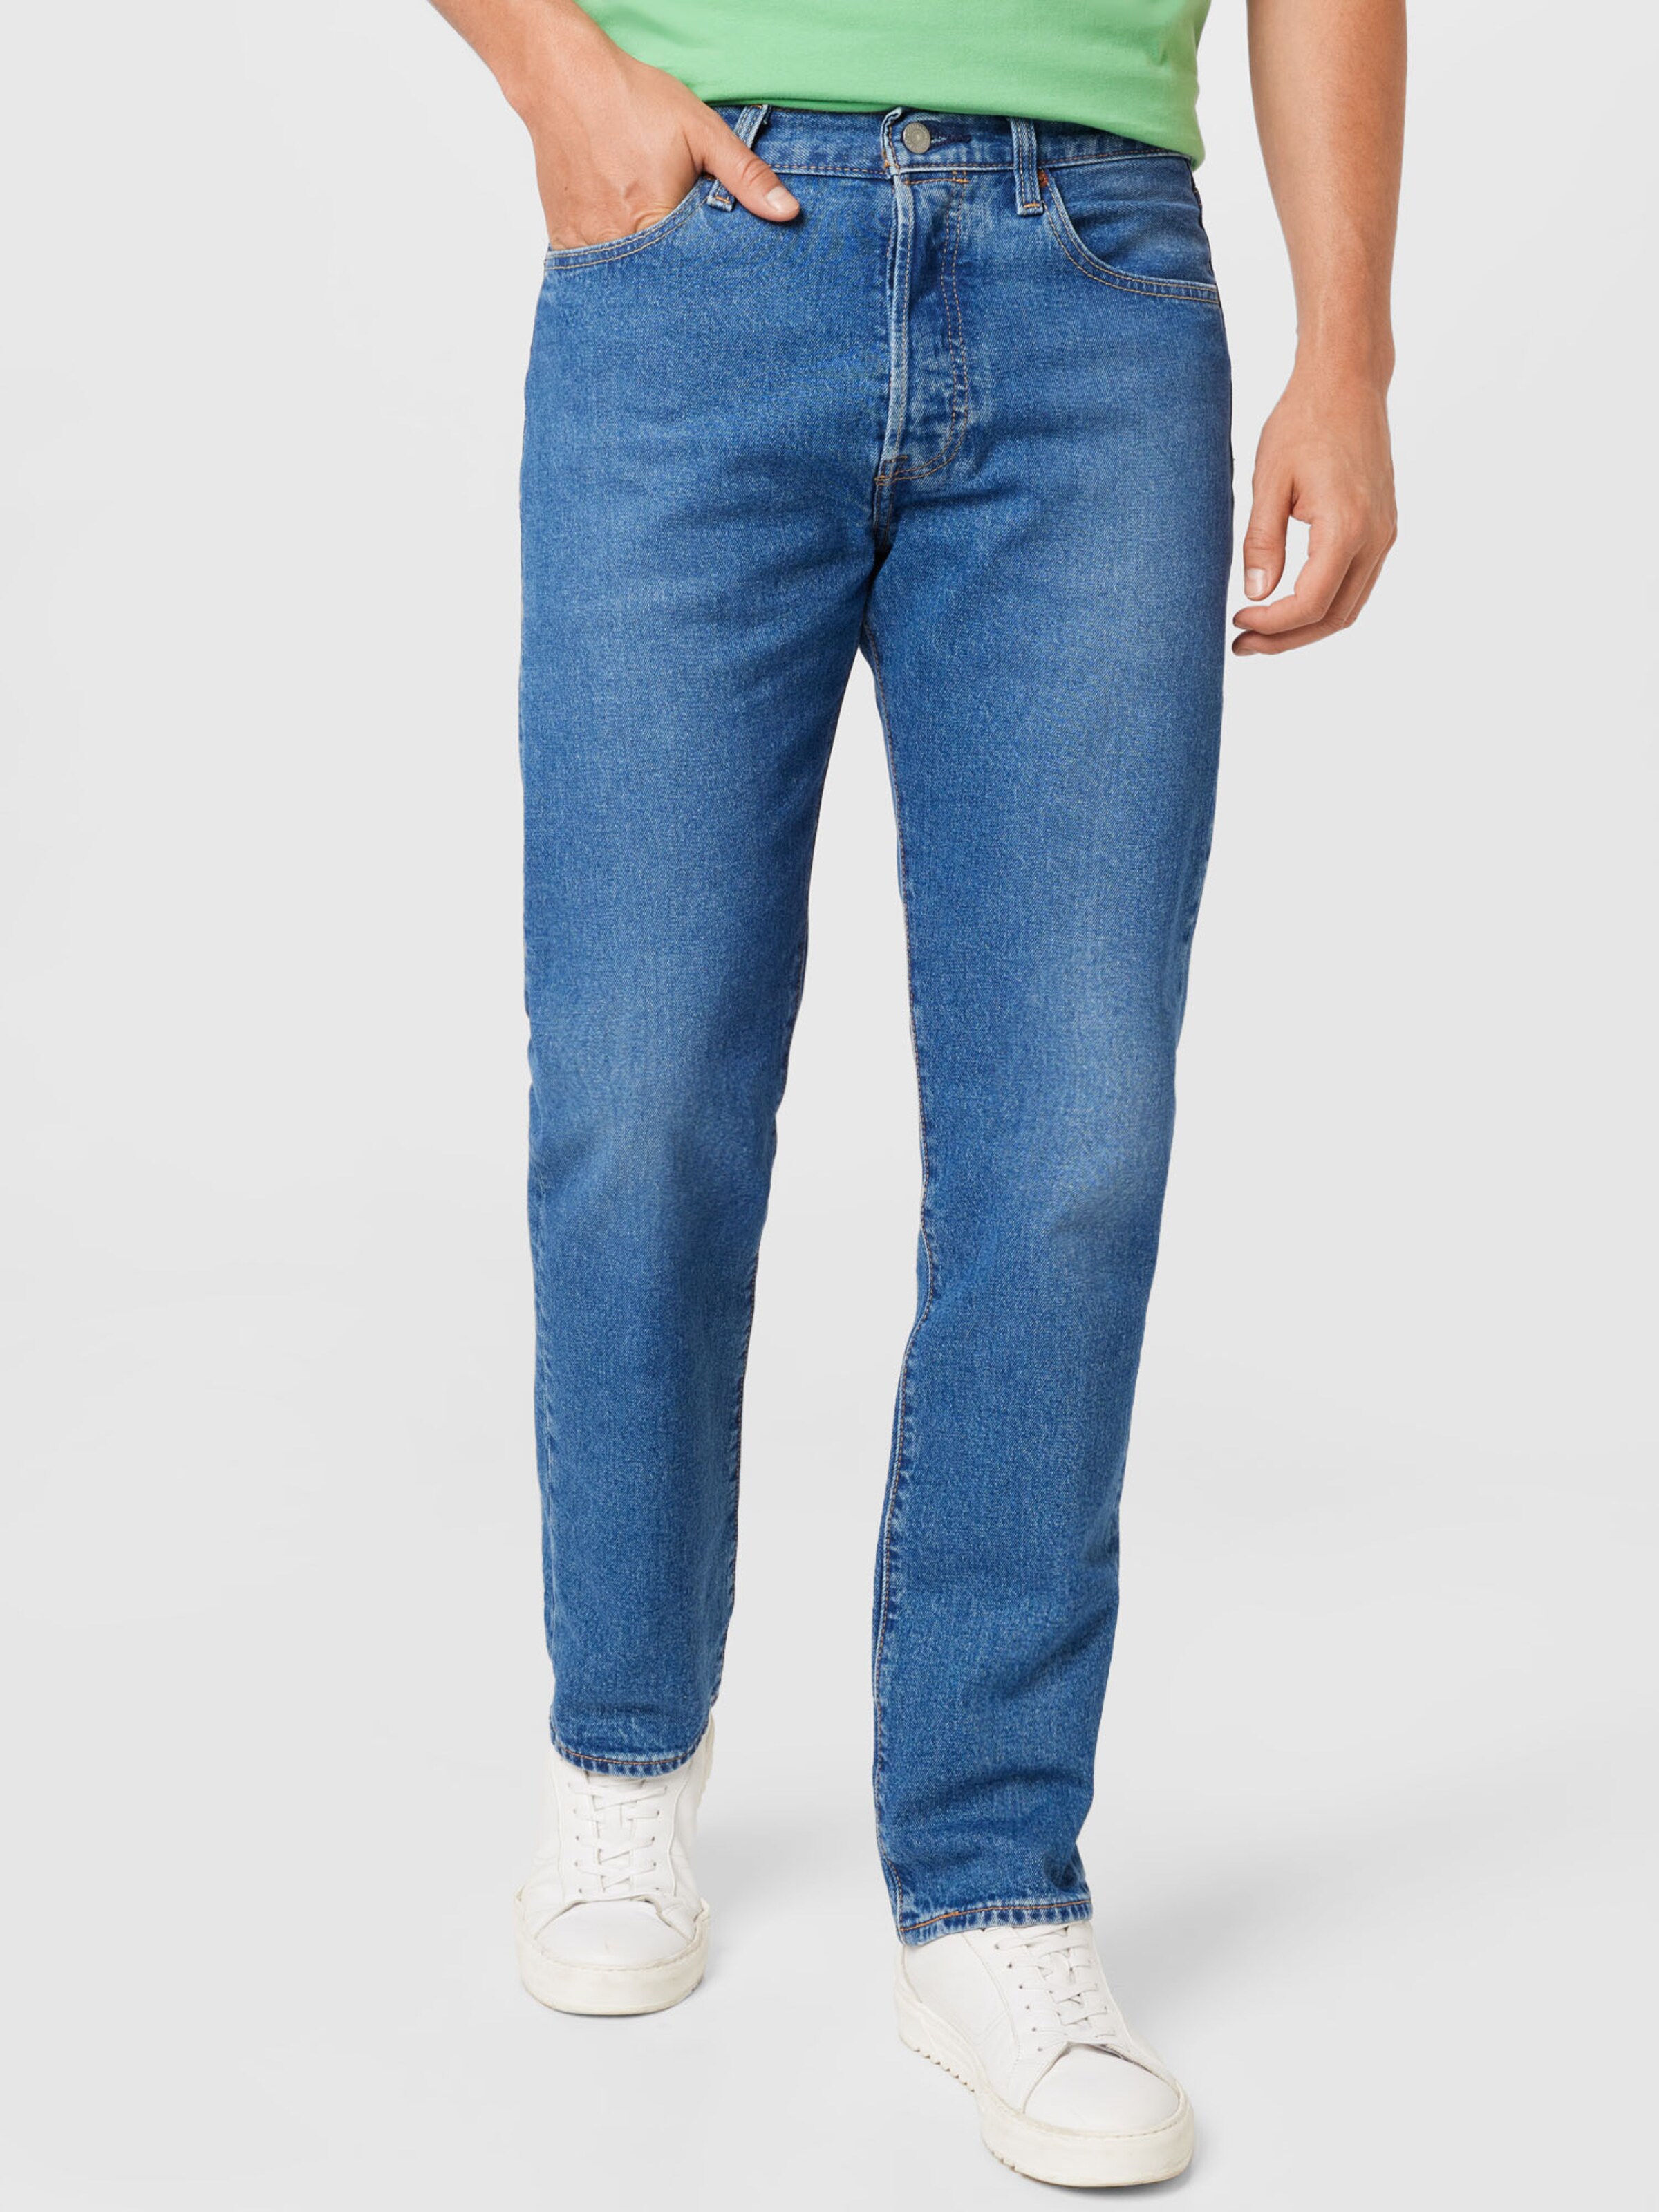 Jeans FRISCO ABOUT YOU Uomo Abbigliamento Pantaloni e jeans Jeans Jeans slim & sigaretta 